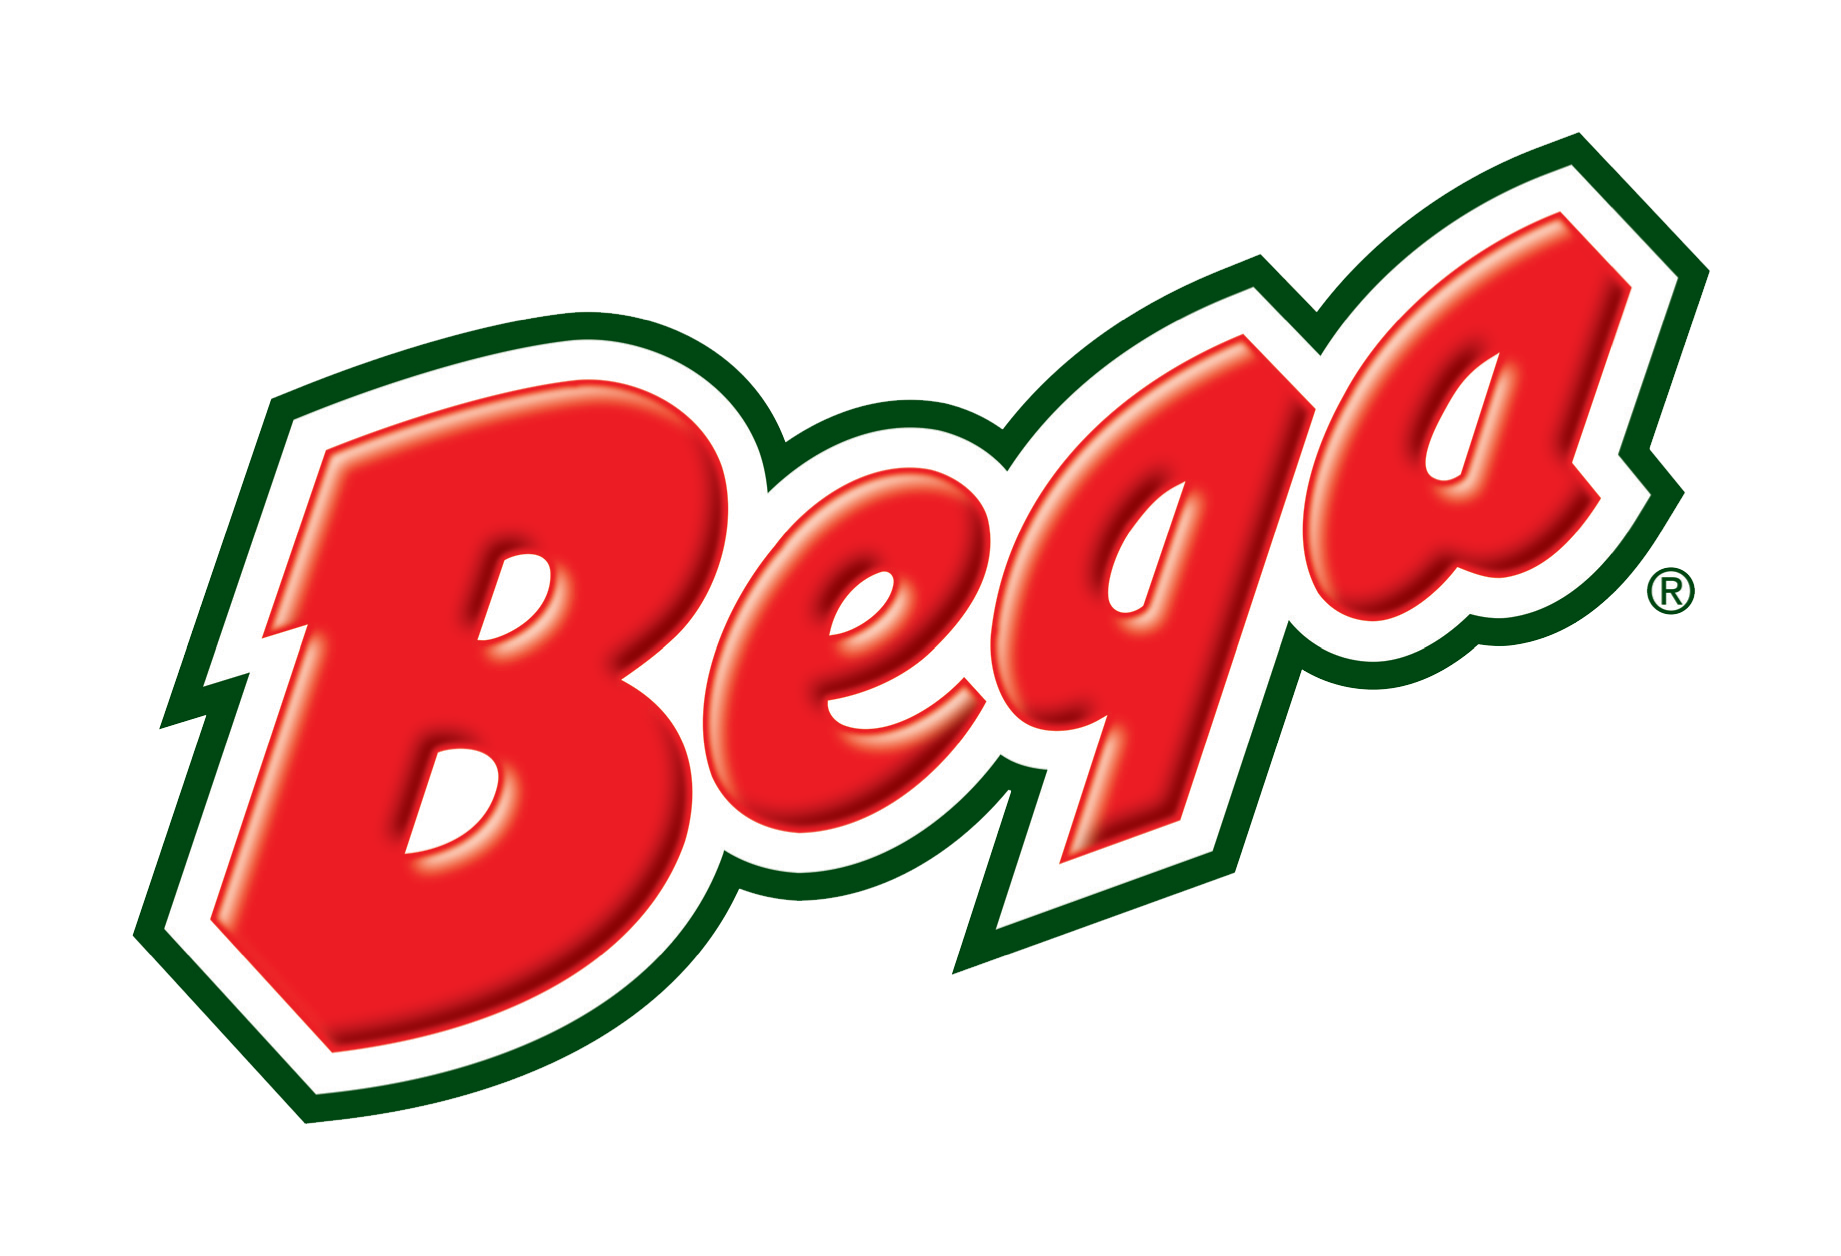 Bega Cheese logo